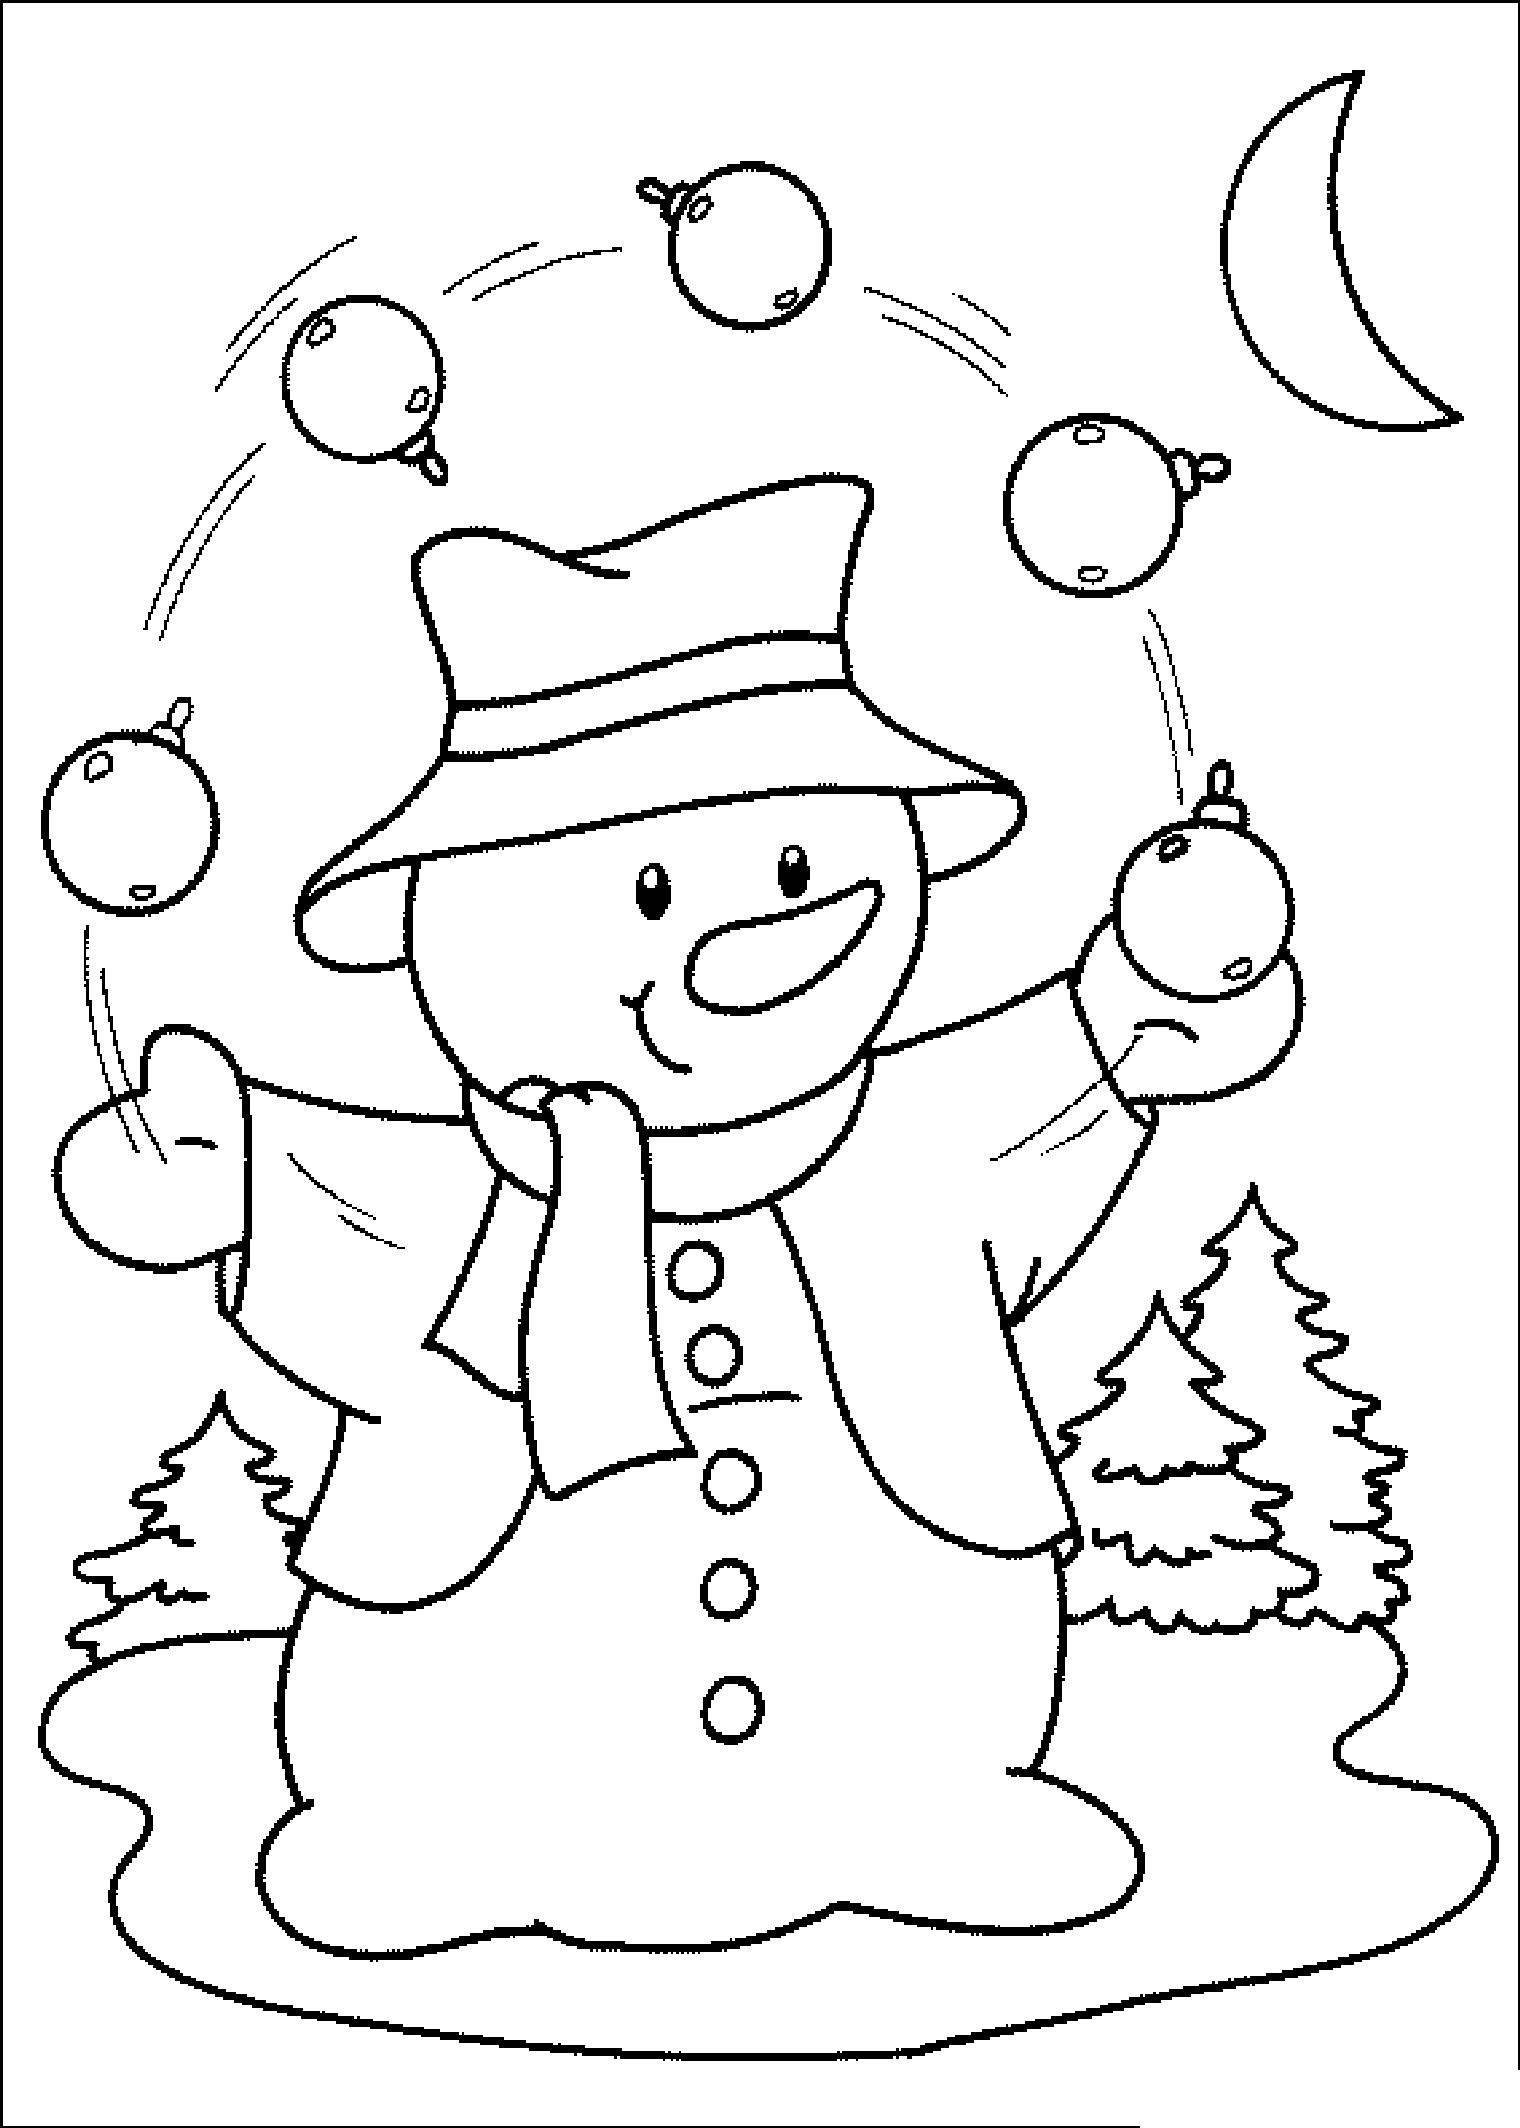 Раскраска с изображением снеговика, жонглирующего елочными игрушками в зимнем лесу под ночным небом (снеговик, месяц, лес, елки)